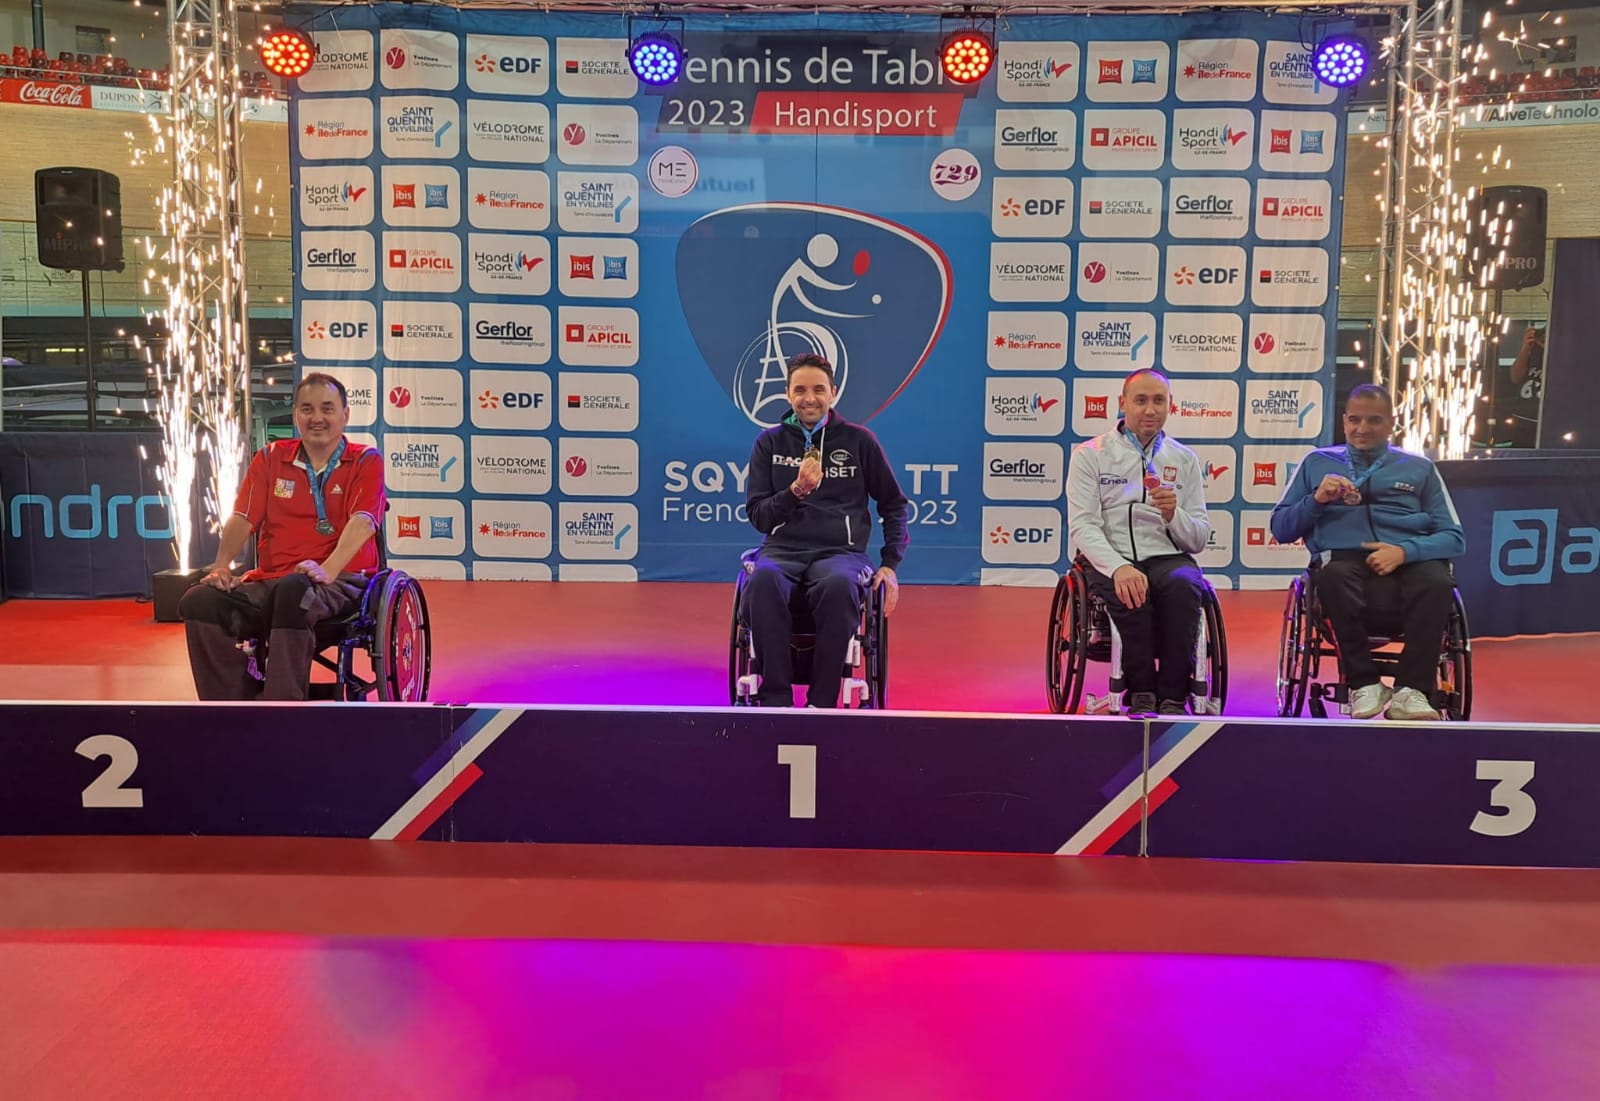 ITTF SQY French Para Open 2023 podio del singolare di classe 2 con Federico Crosara oro